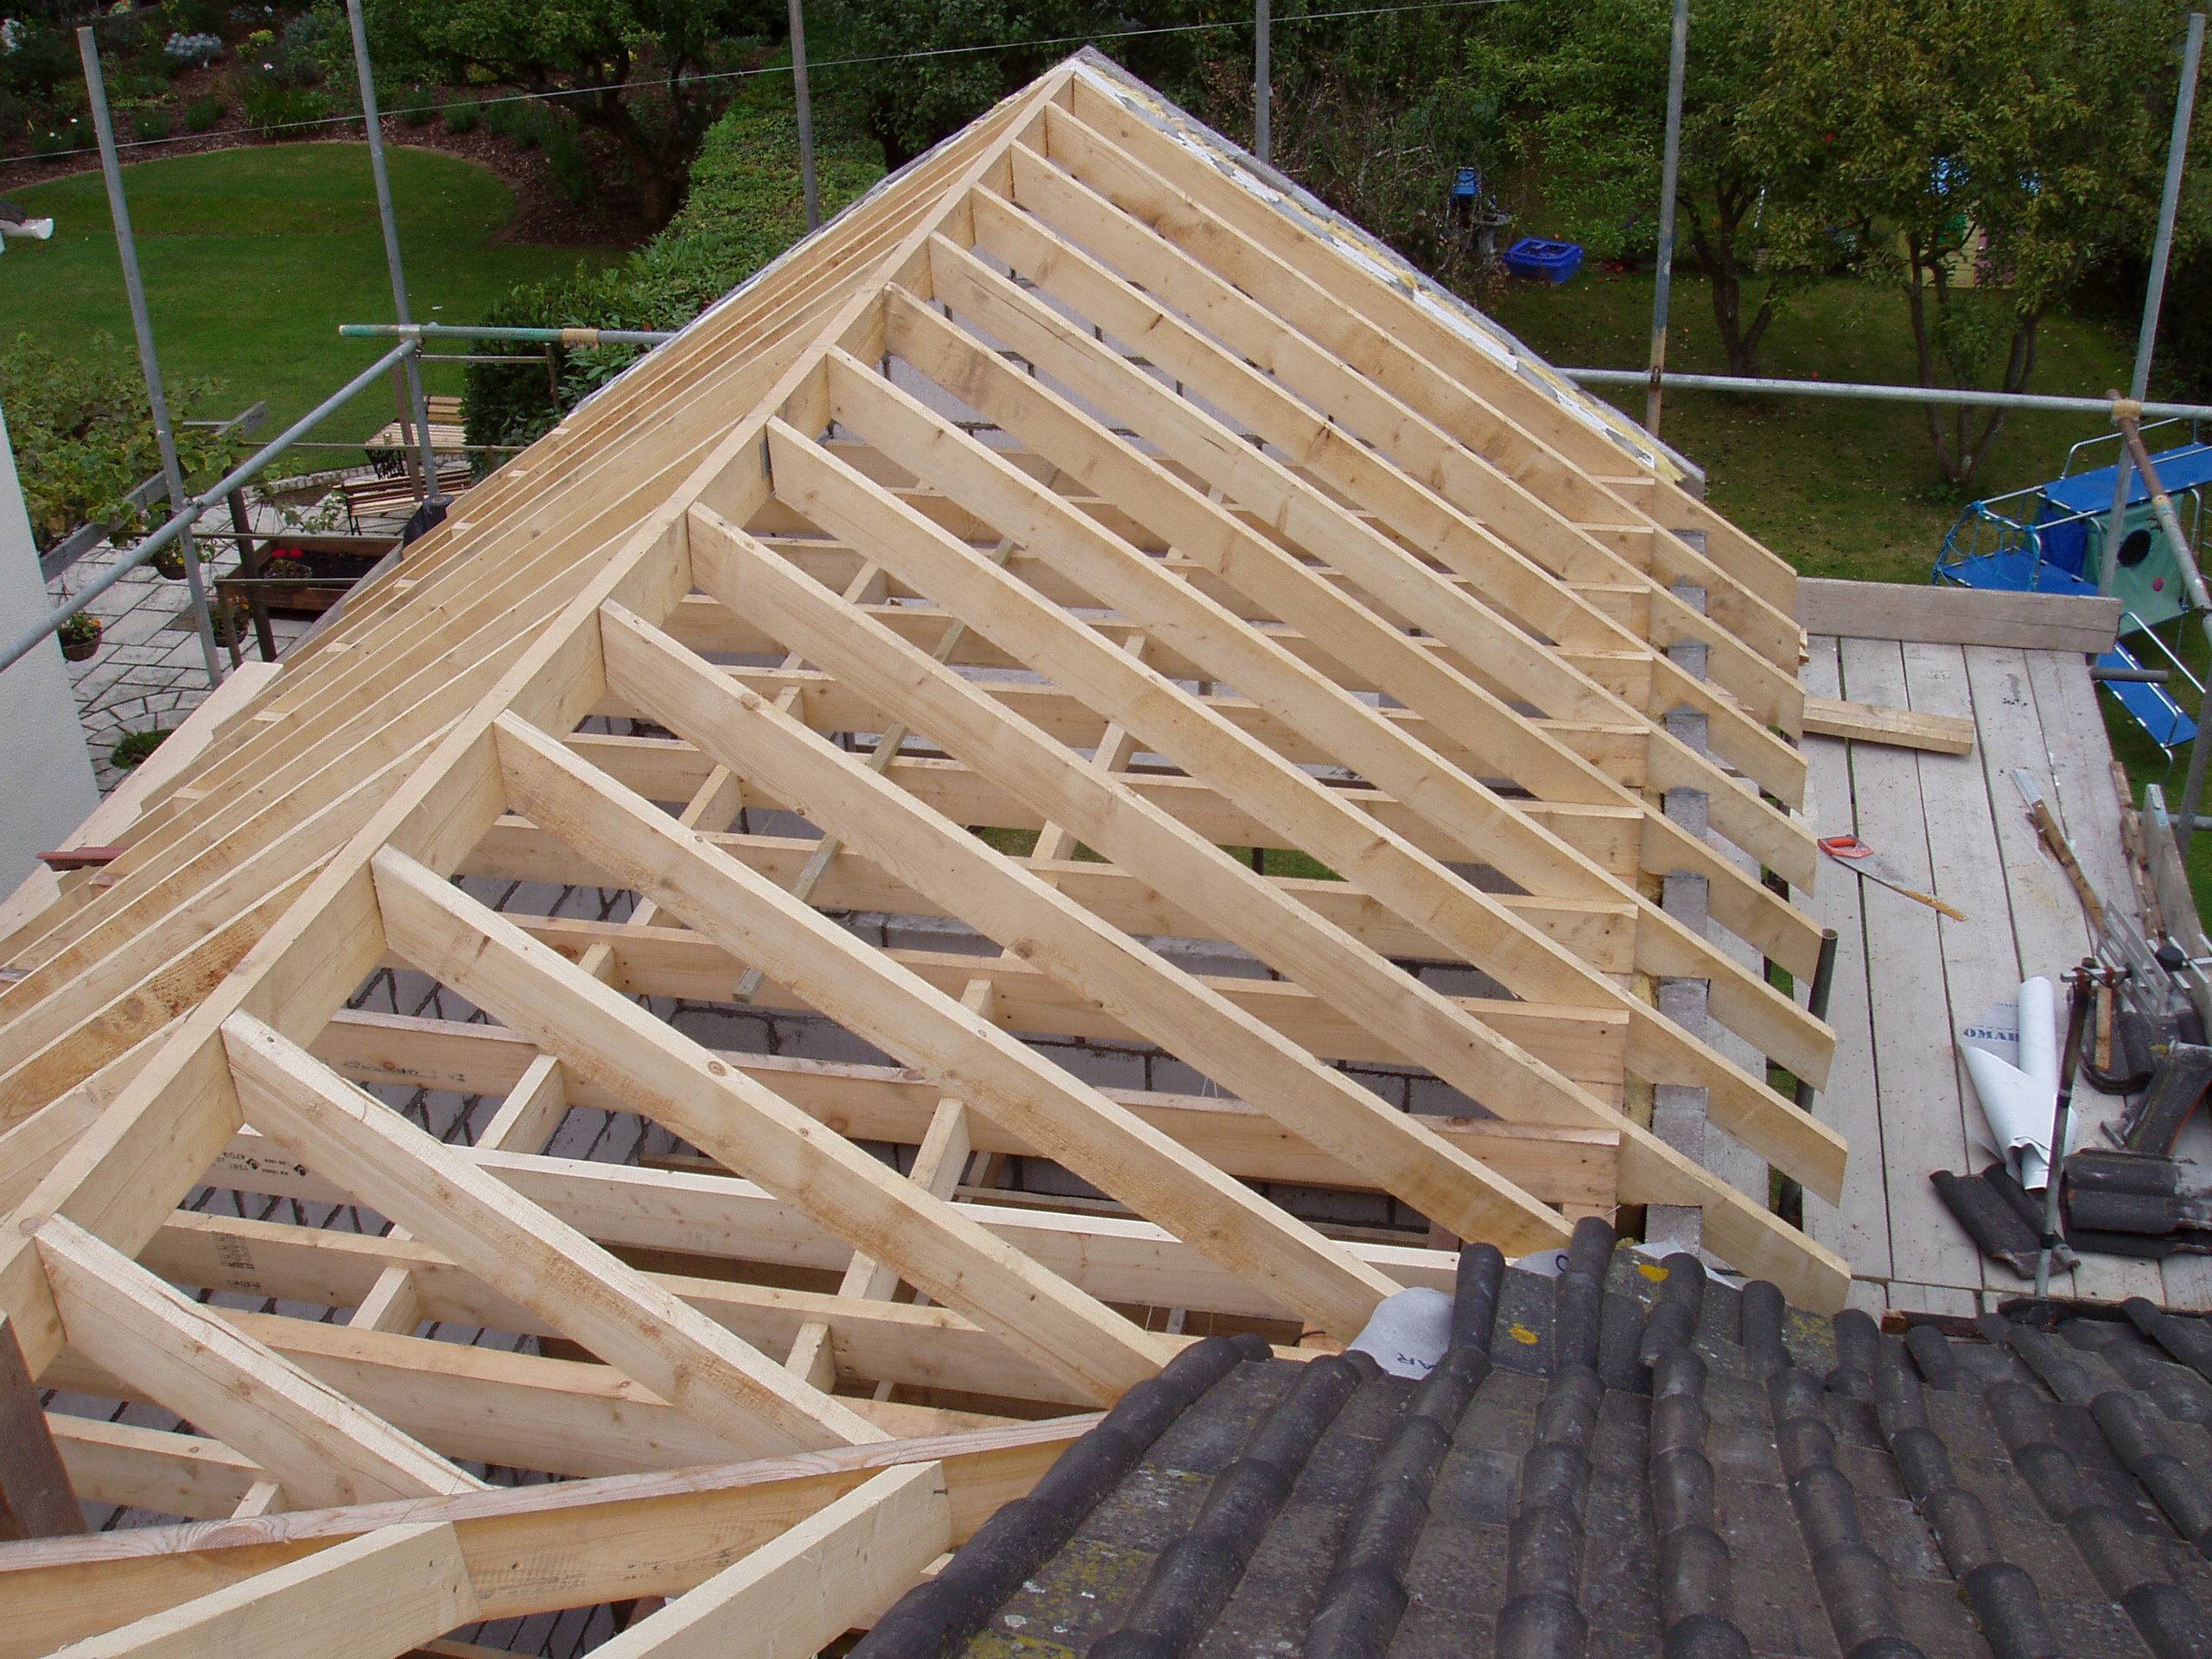 Строим крышу дома своими руками пошагово